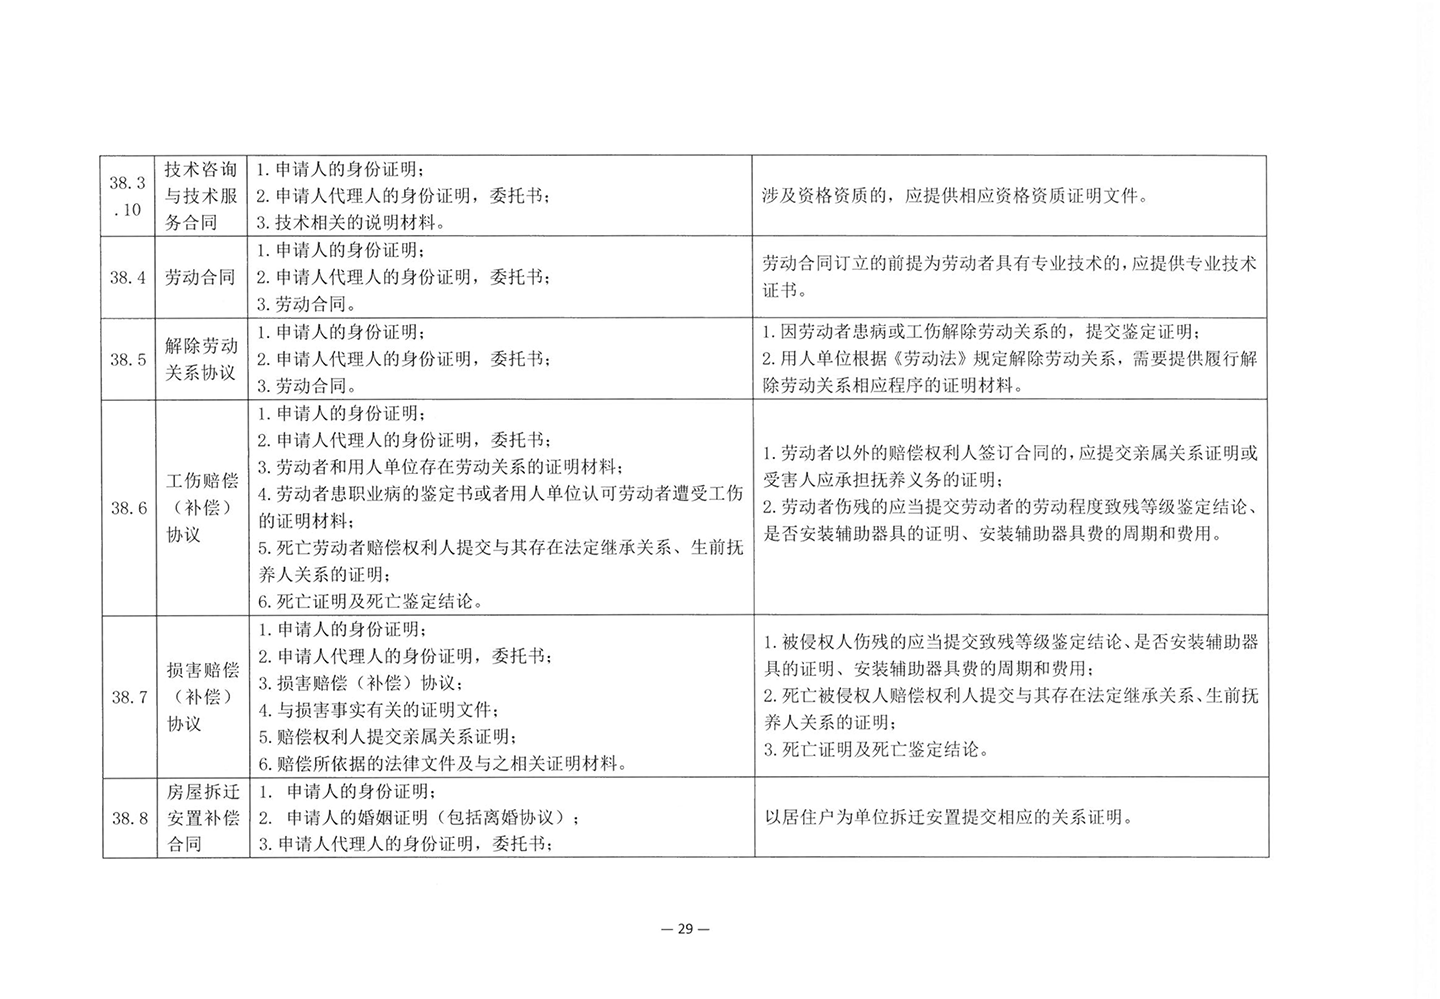 010417243466_03北京市公证协会关于印发《公证机构受理公证事项事务申请证明材料清单》的通知_31